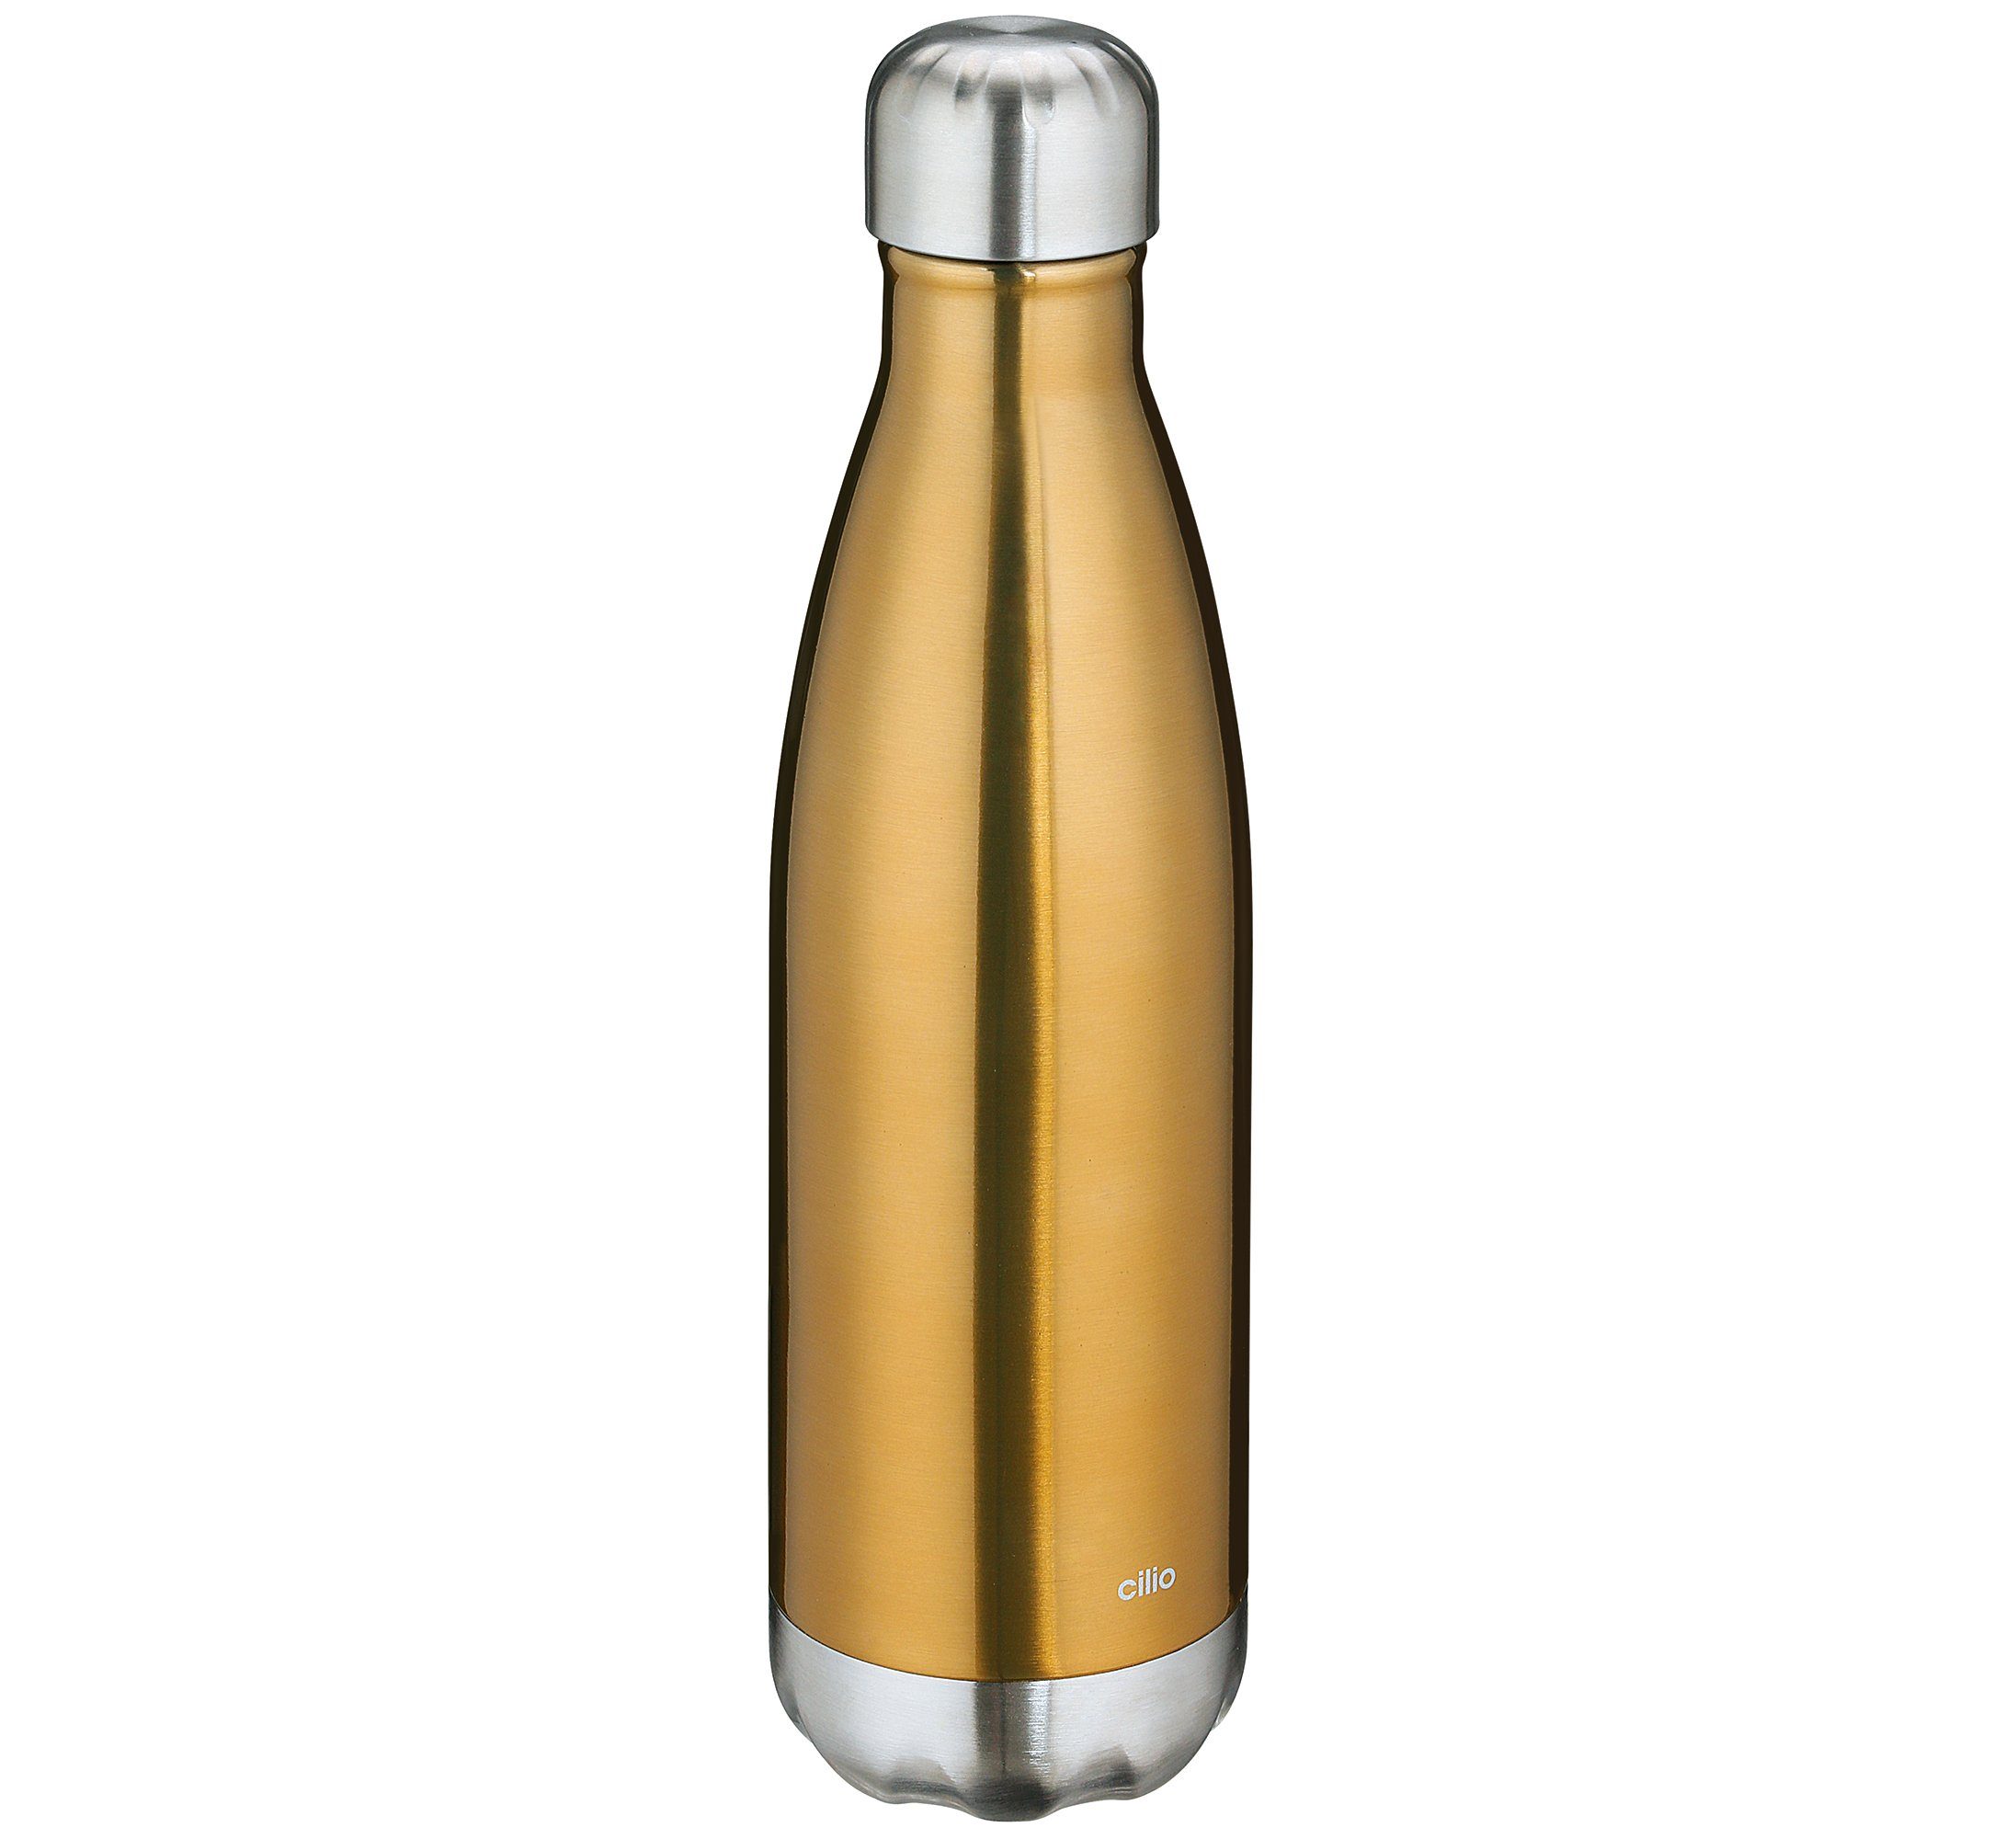 Cilio Thermoflasche Trinkflasche Isoliertrinkflasche Edelstahl cilio ELEGANTE 0,5l gold